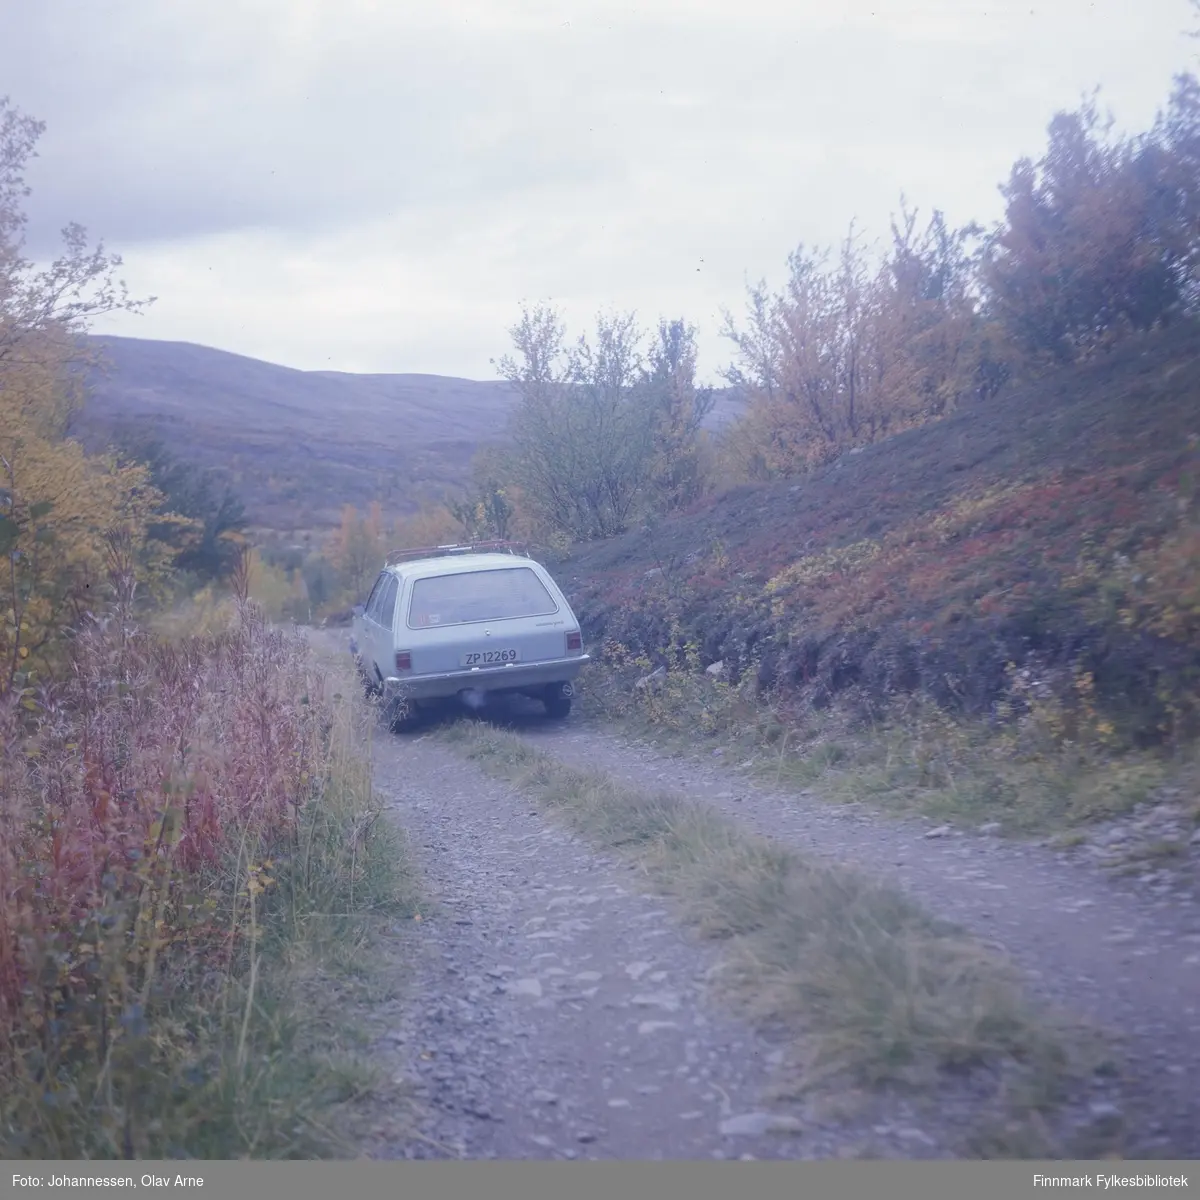 Bil står parkert på siden av grusvei, muligens i Syltefjorddalen (Finnmark)

Bilen tilhørte maleren Olav Johannessen og er en Opel Rekord 

Skiltnummer: ZP 12269
